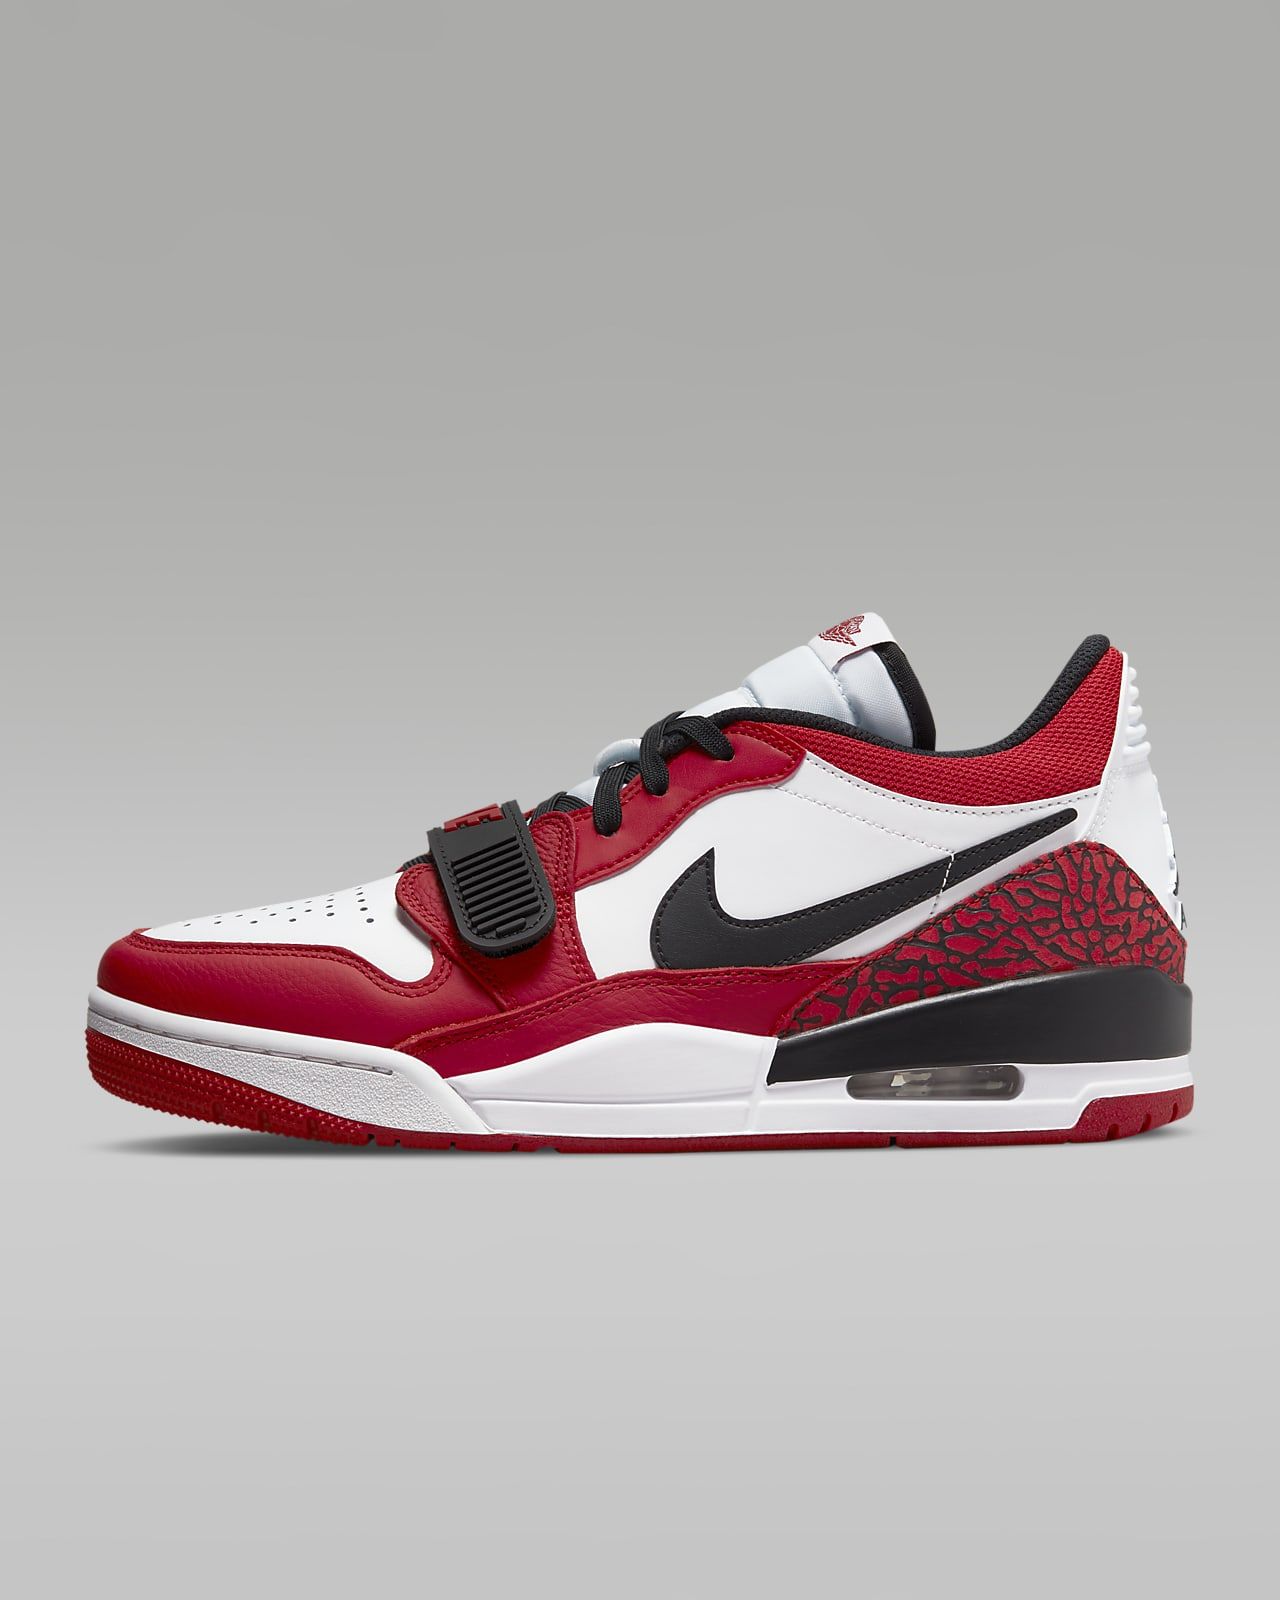 Air Jordan Legacy 312 Low Men's Shoes. Nike.com | Nike (US)